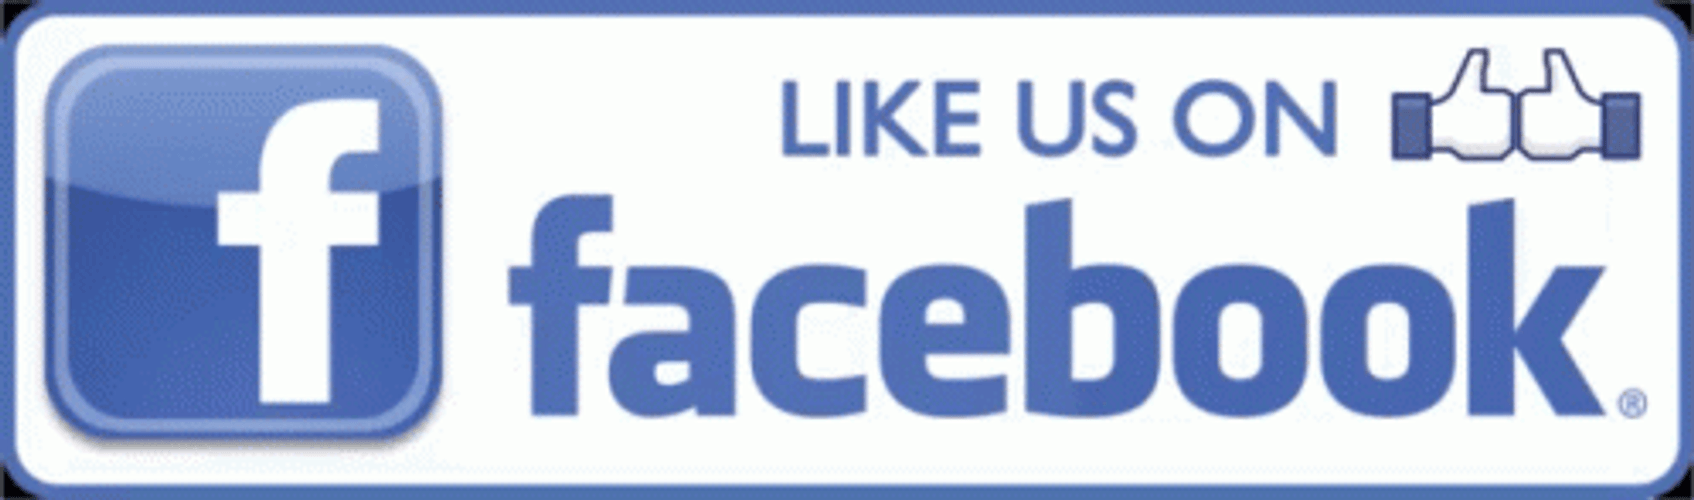 Like Us On Facebook Thumb Fight